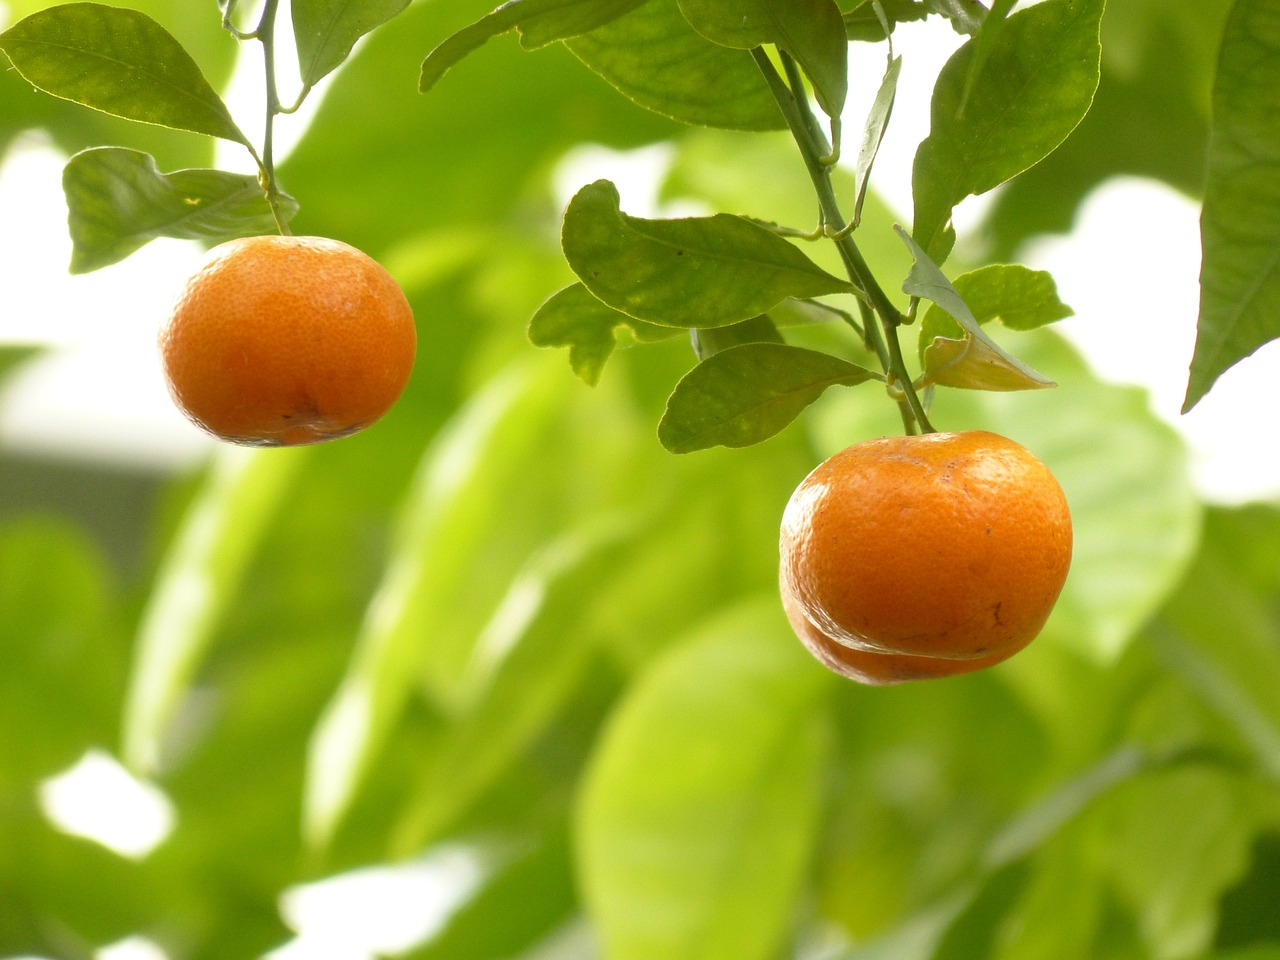 Mandarinas, Oranžinė, Medis, Vaisiai, Citrusinis Vaisius, Calamondinorange, Calamondin, Citrofortunella Microcarpa, Citrusinių Fortunella, Citrusinių Mitis